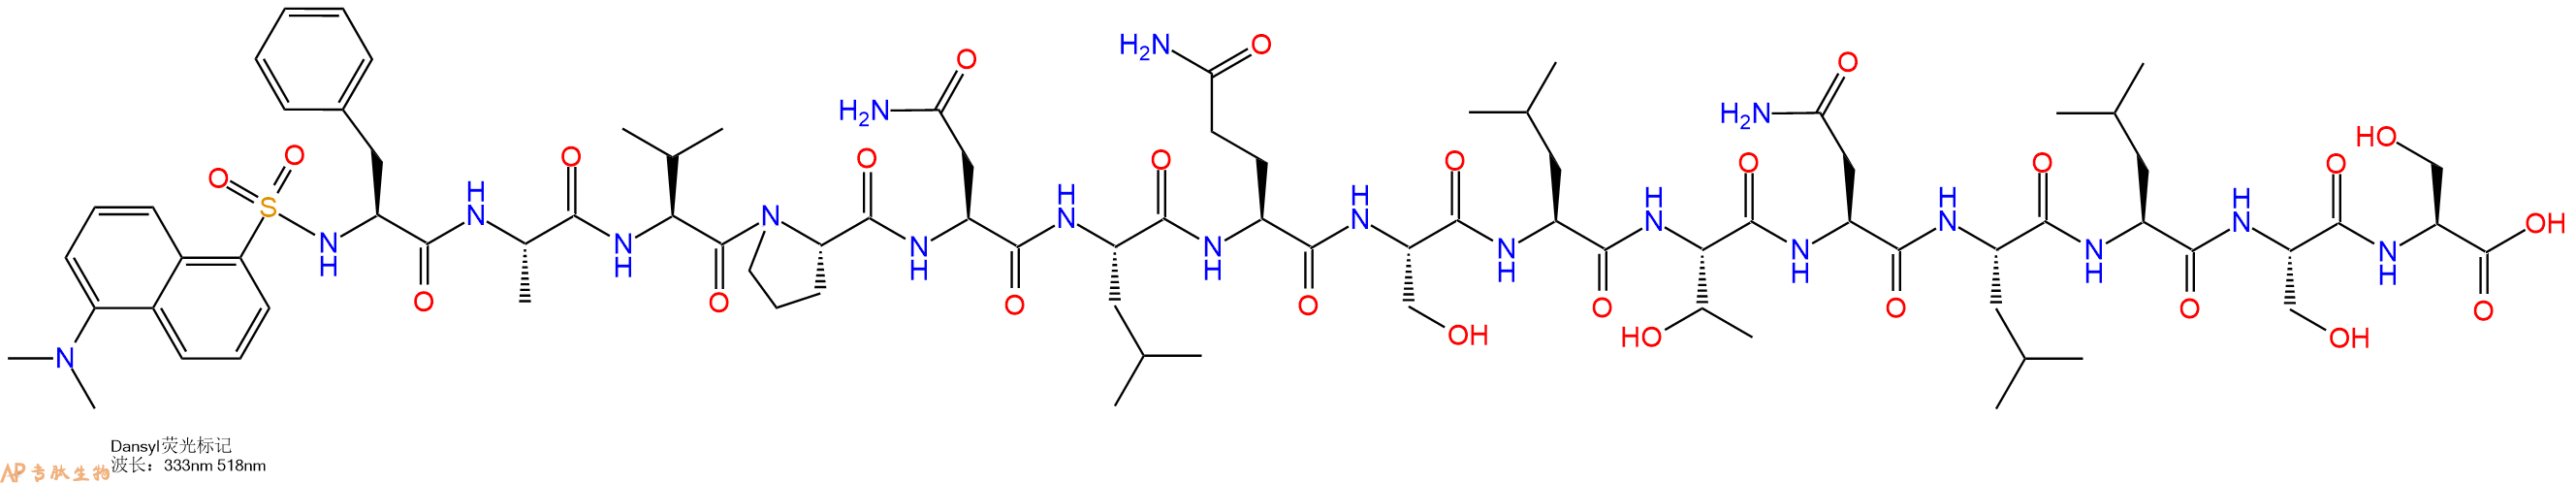 专肽生物产品Dansyl-Phe-Ala-Val-Pro-Asn-Leu-Gln-Ser-Leu-Thr-Asn